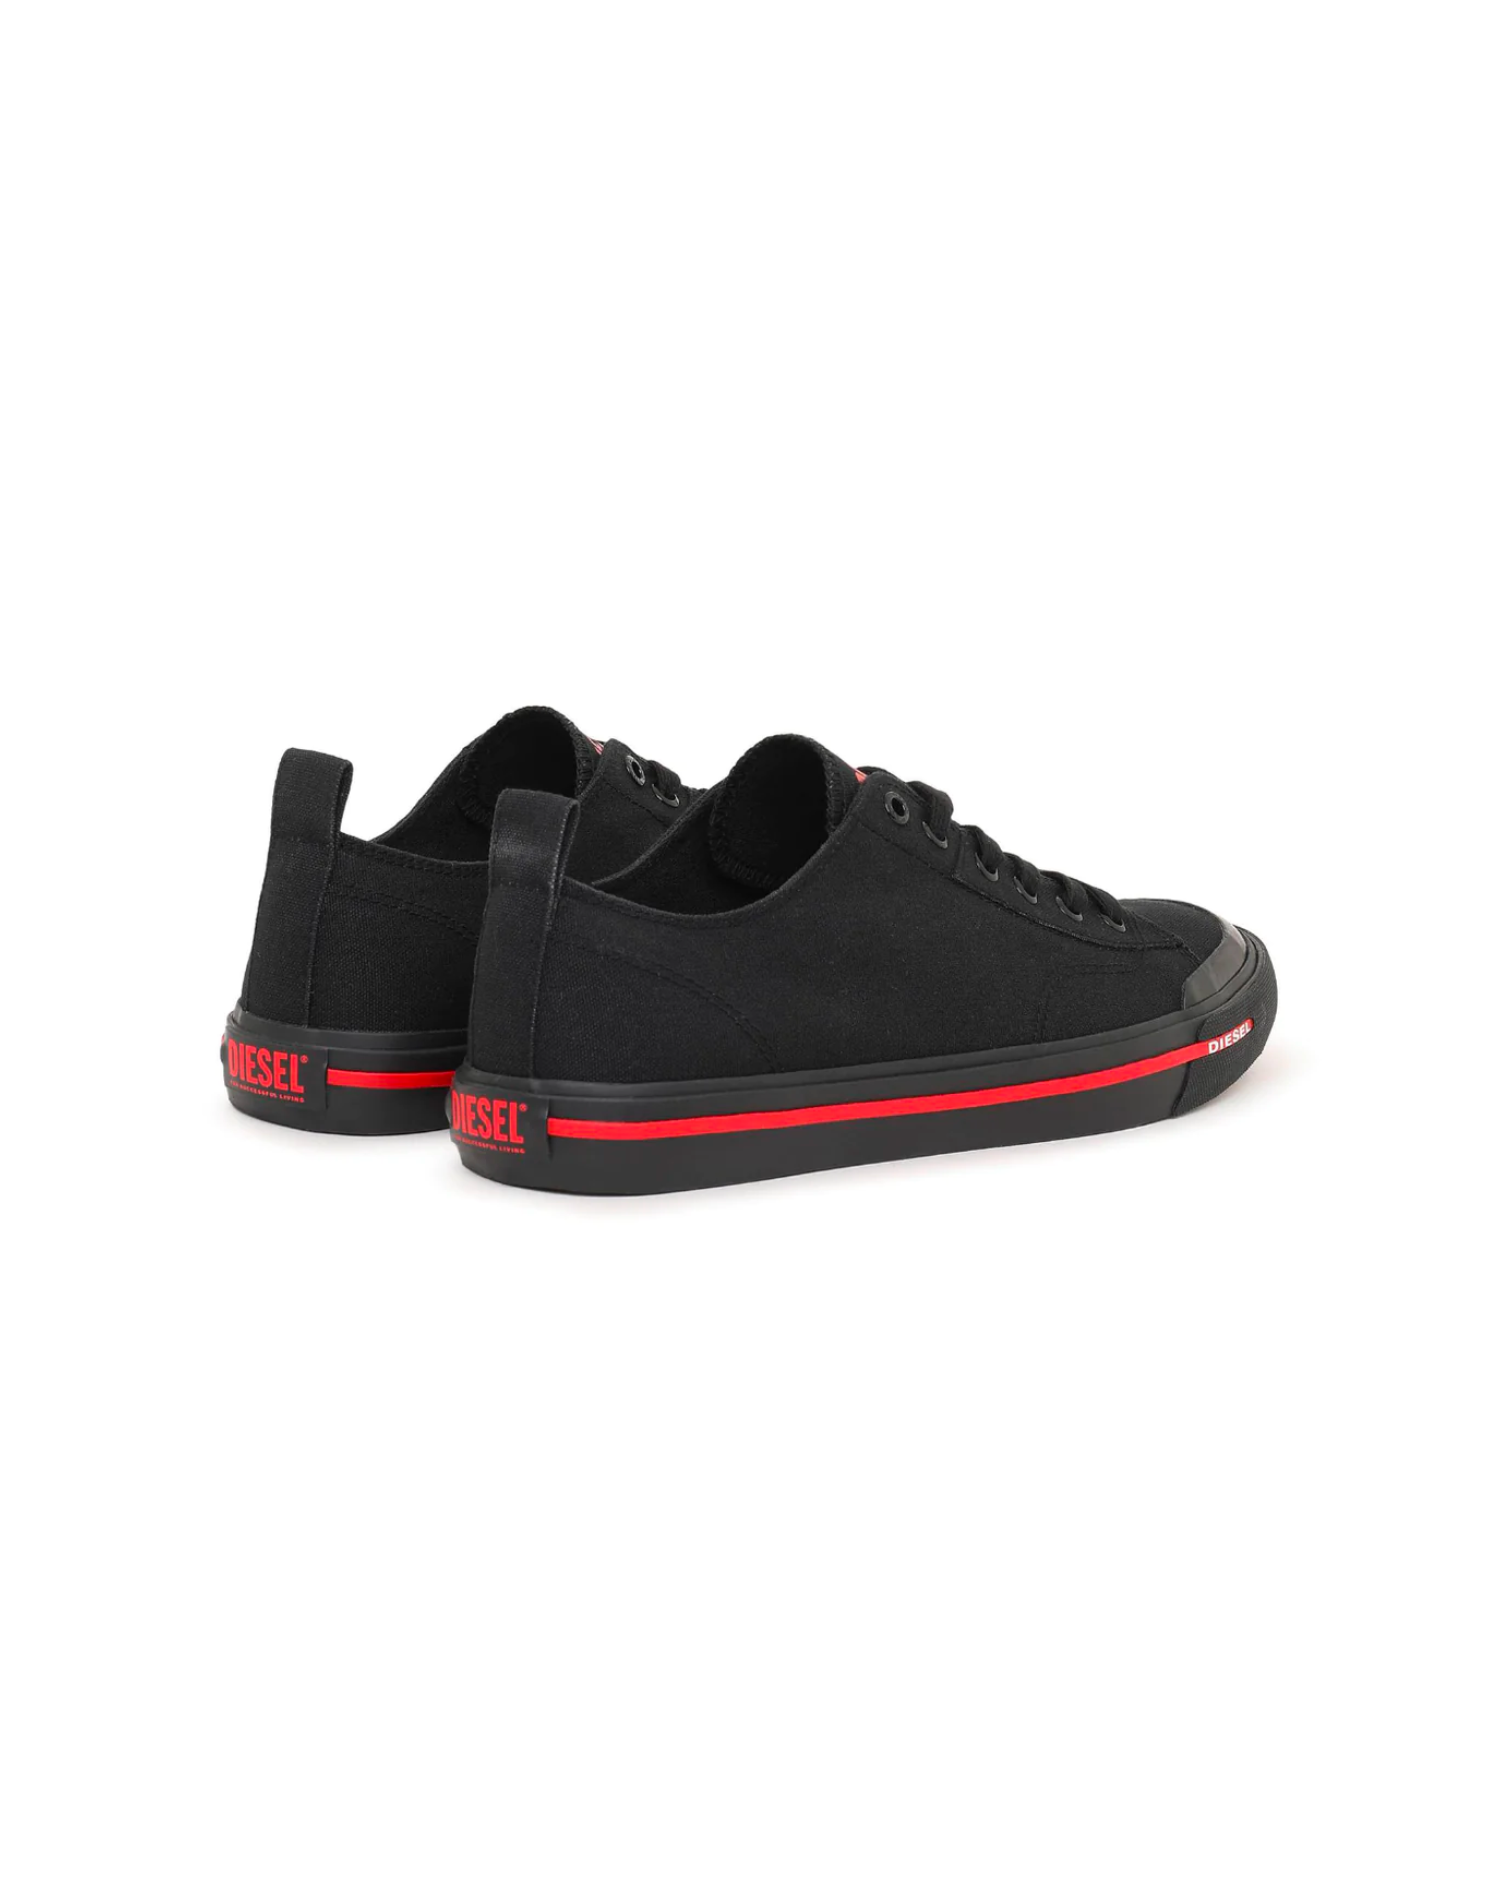 Diesel - S-Athos Low Sneaker - Black